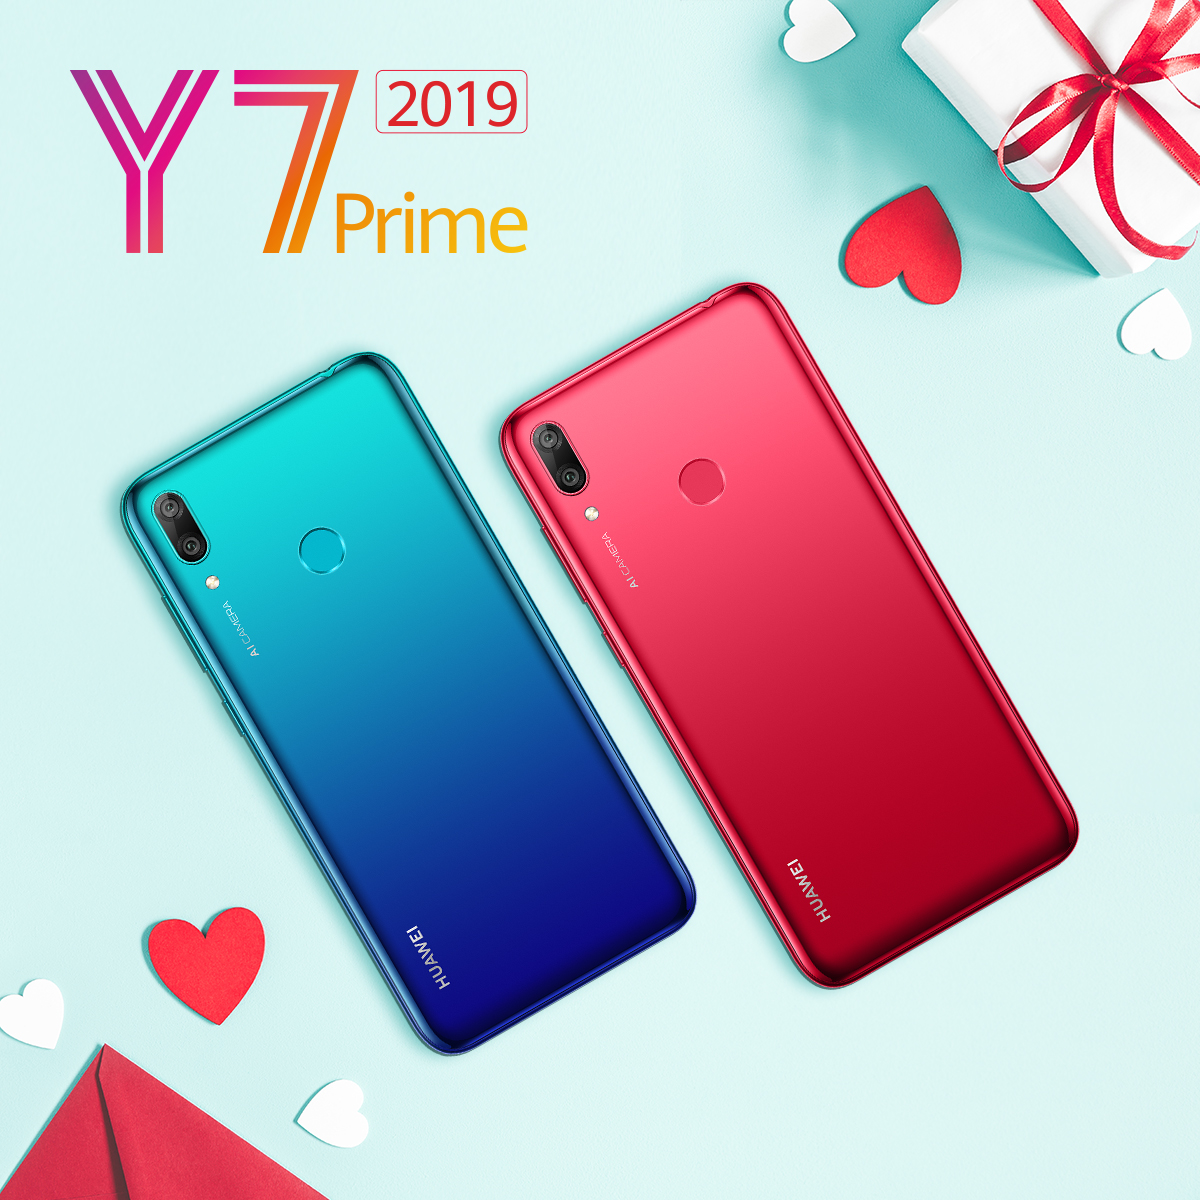 الهدية الأمثل في عيد العشاق Y7 Prime 2019 من Huawei لكِ ولهُ!